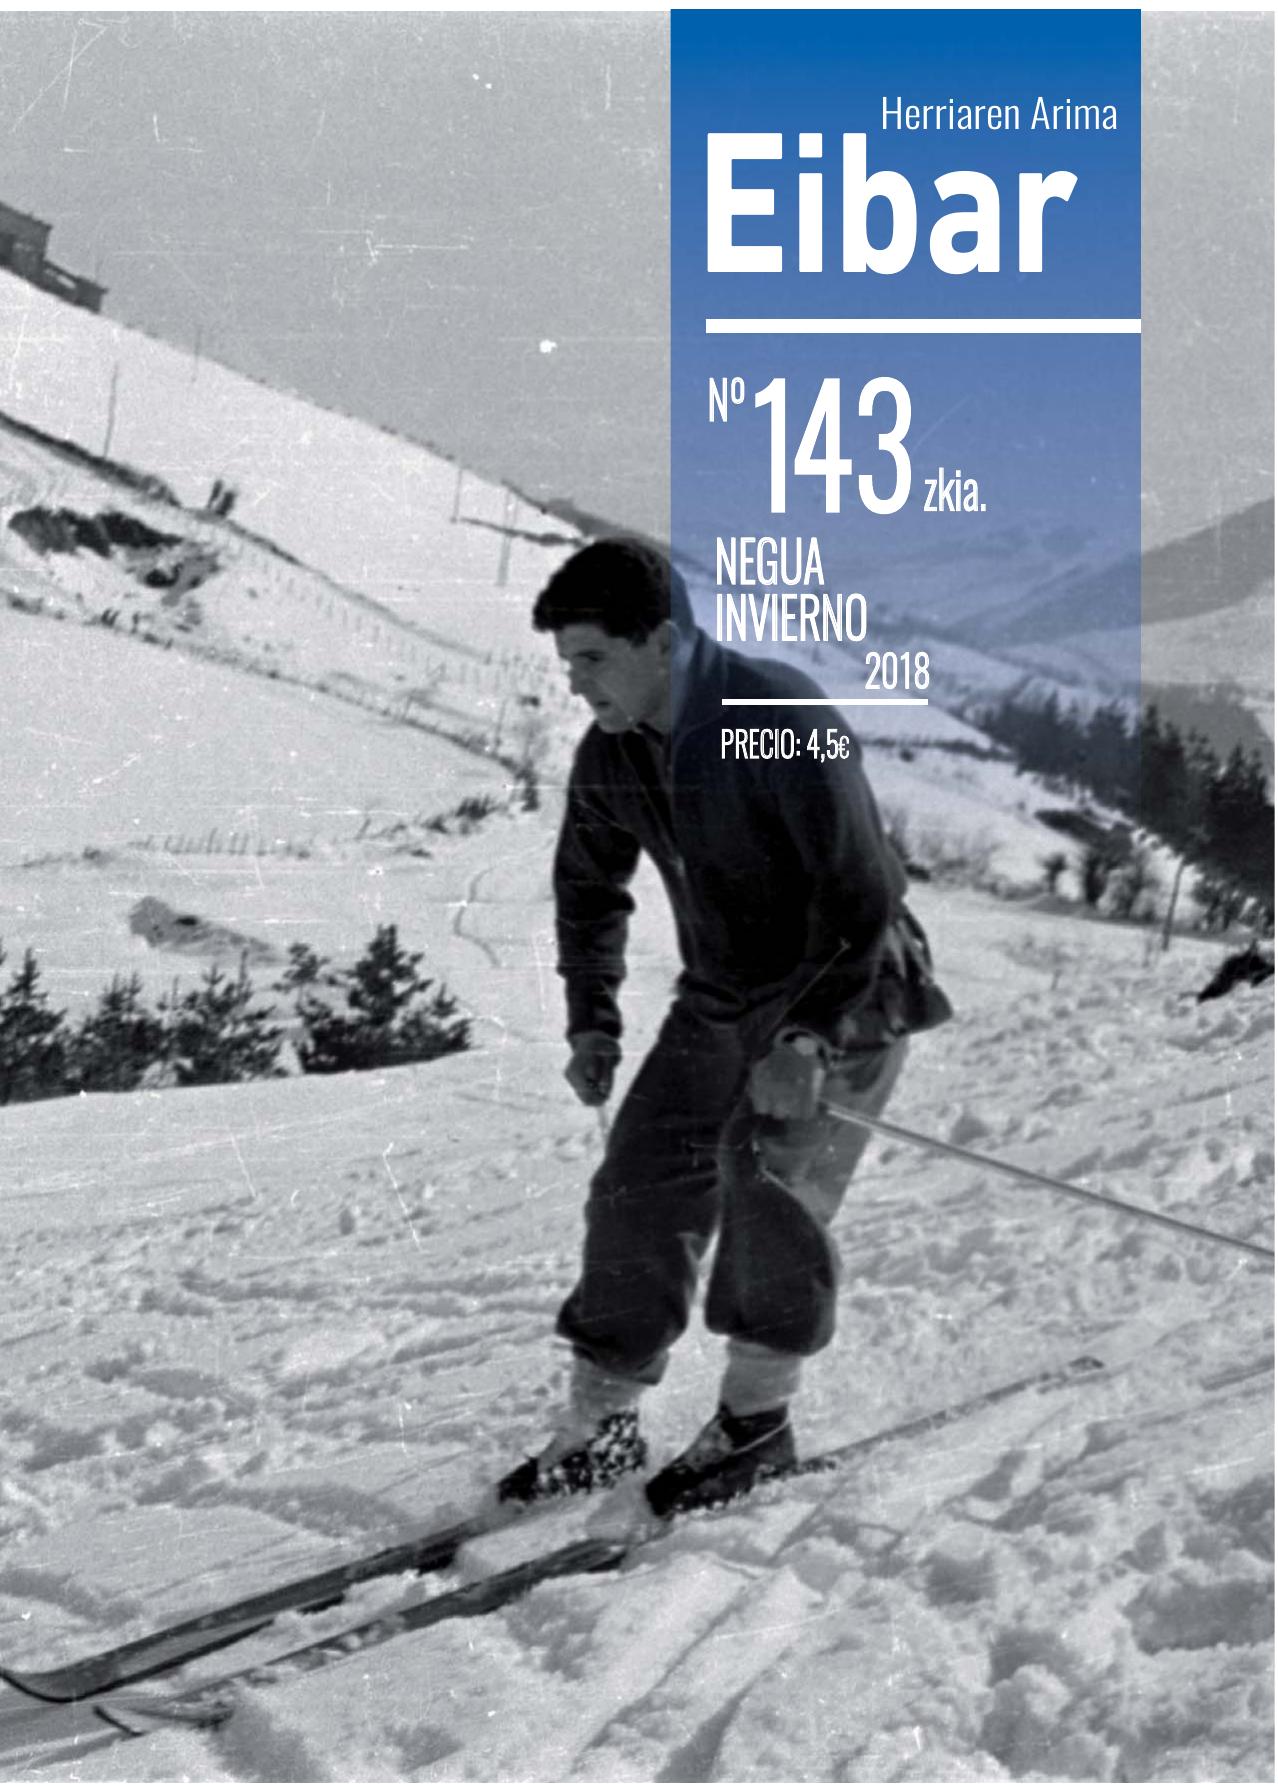 El último número de la revista Eibar, publicada ininterrumpidamente desde el año 1952, ya está en la calle y en la red